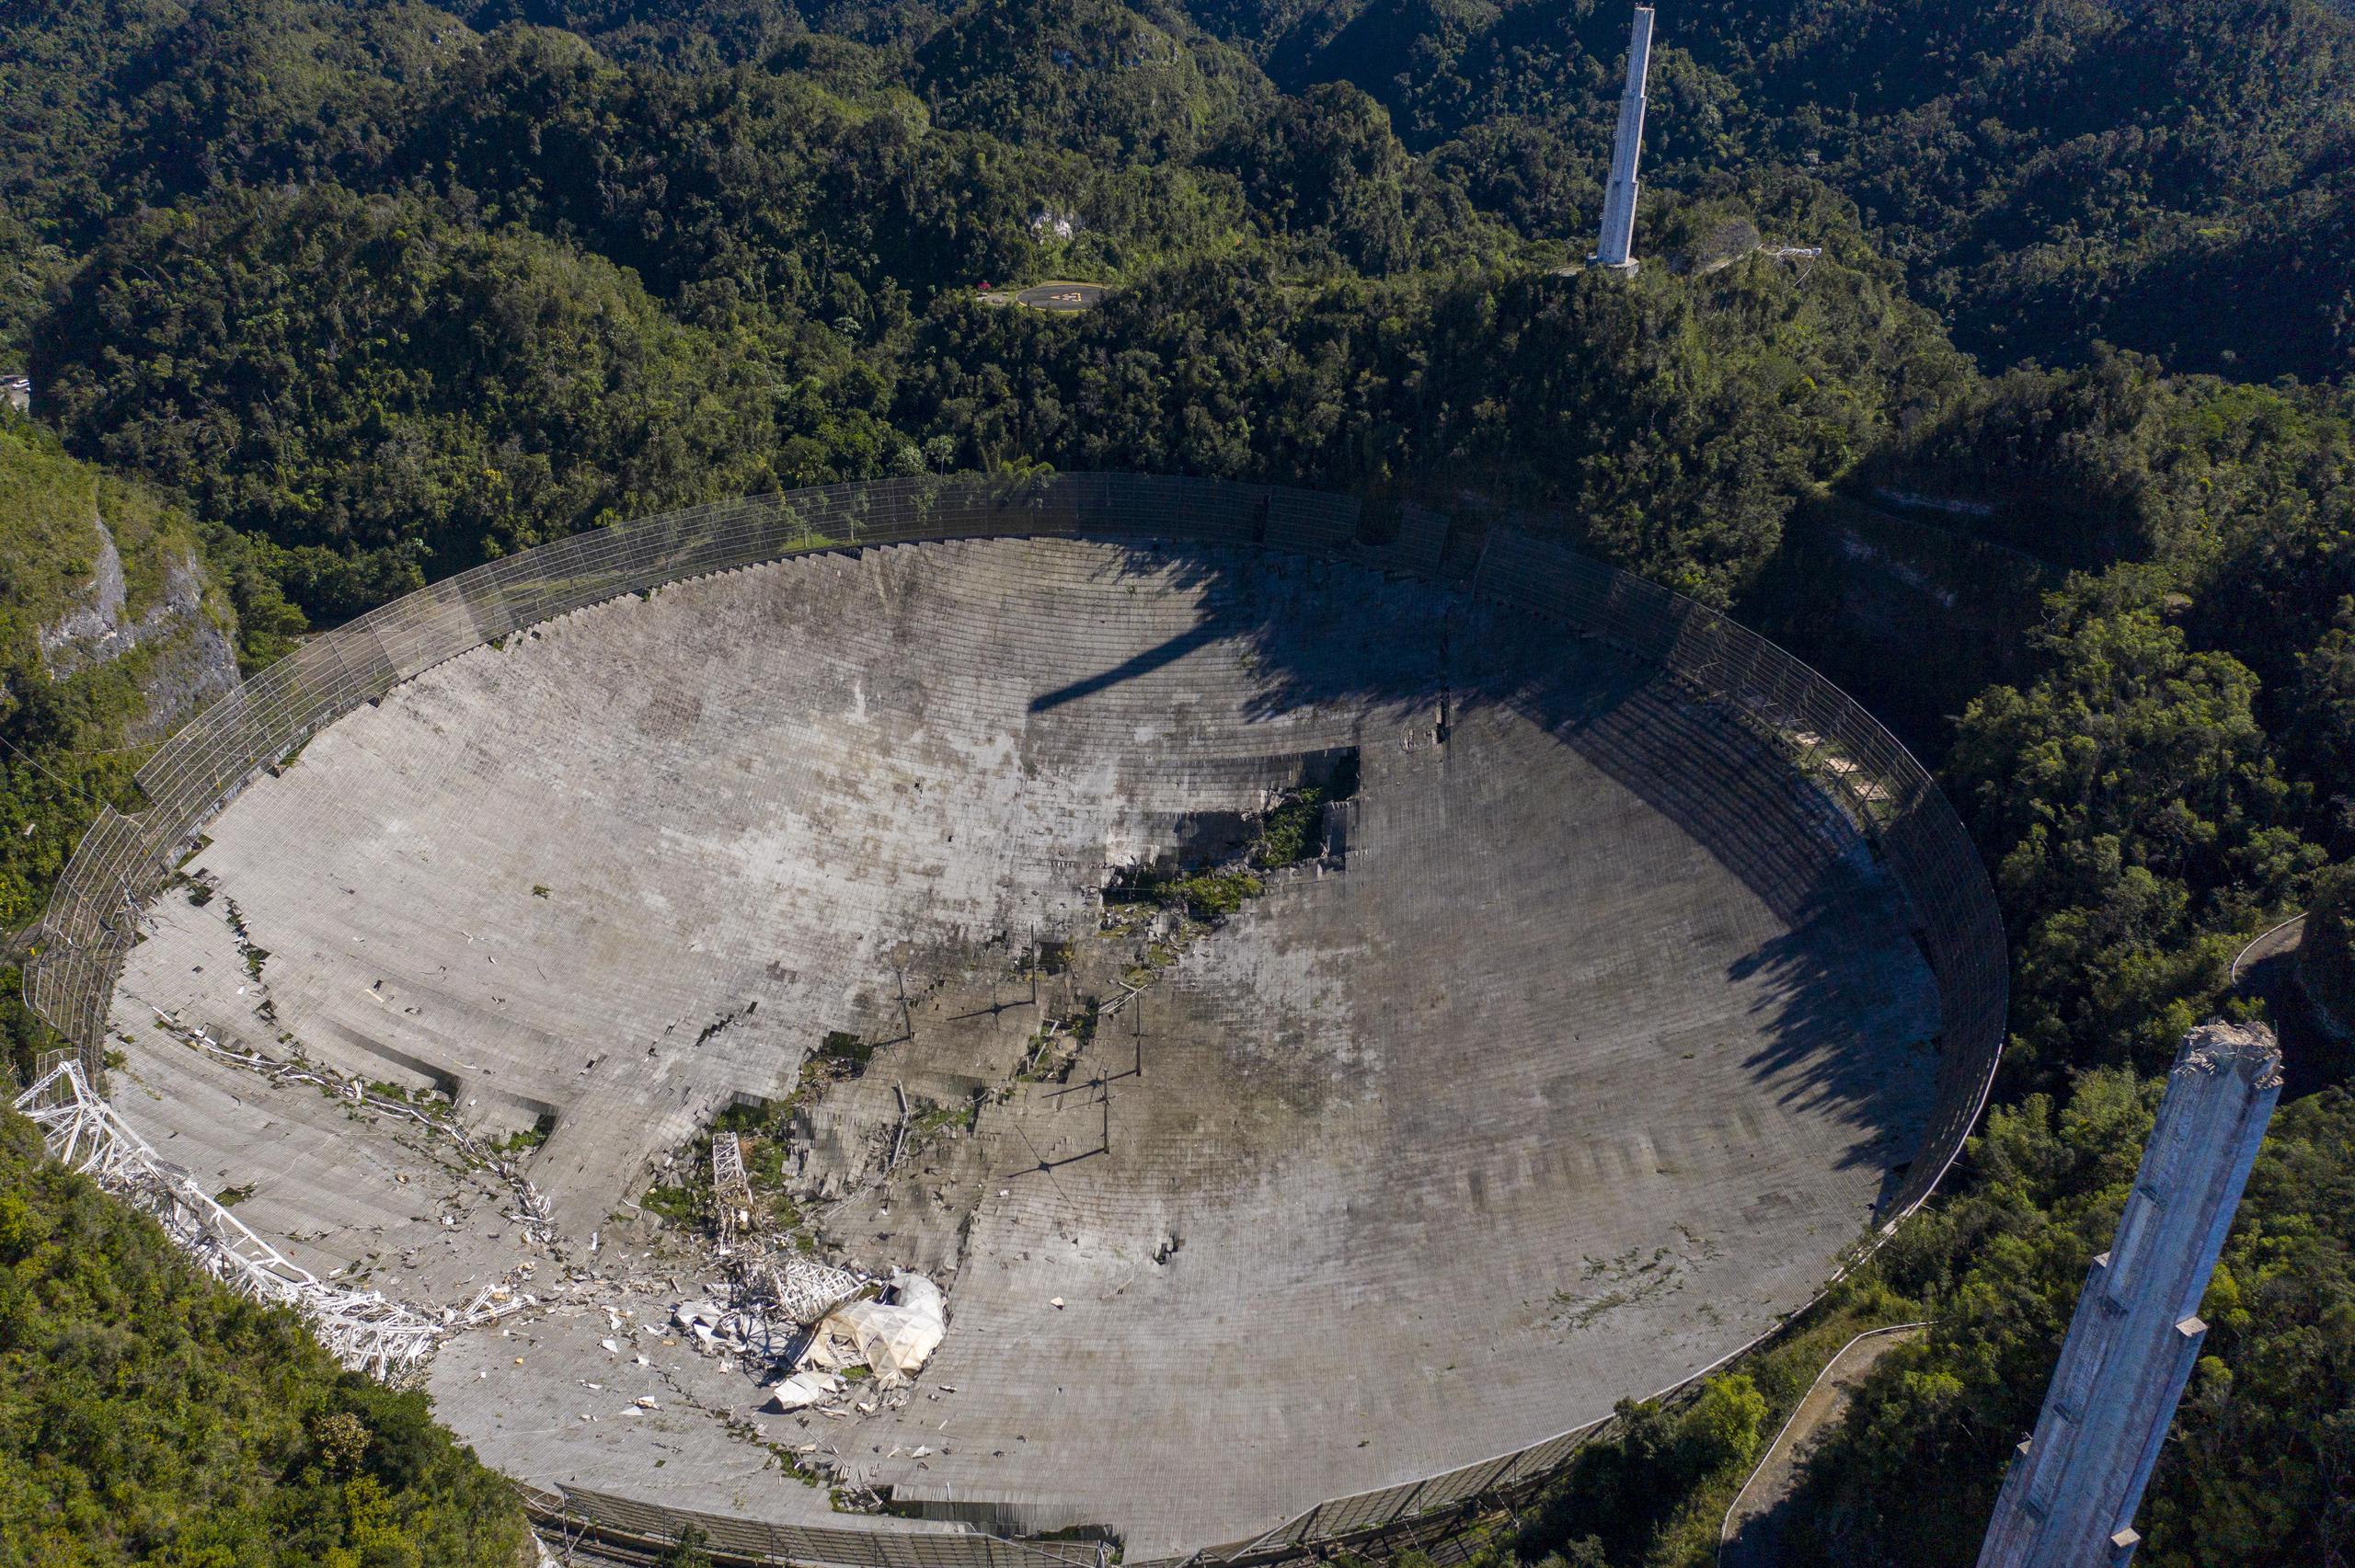 Colapso del radiotelescopio del Observatorio de Arecibo.